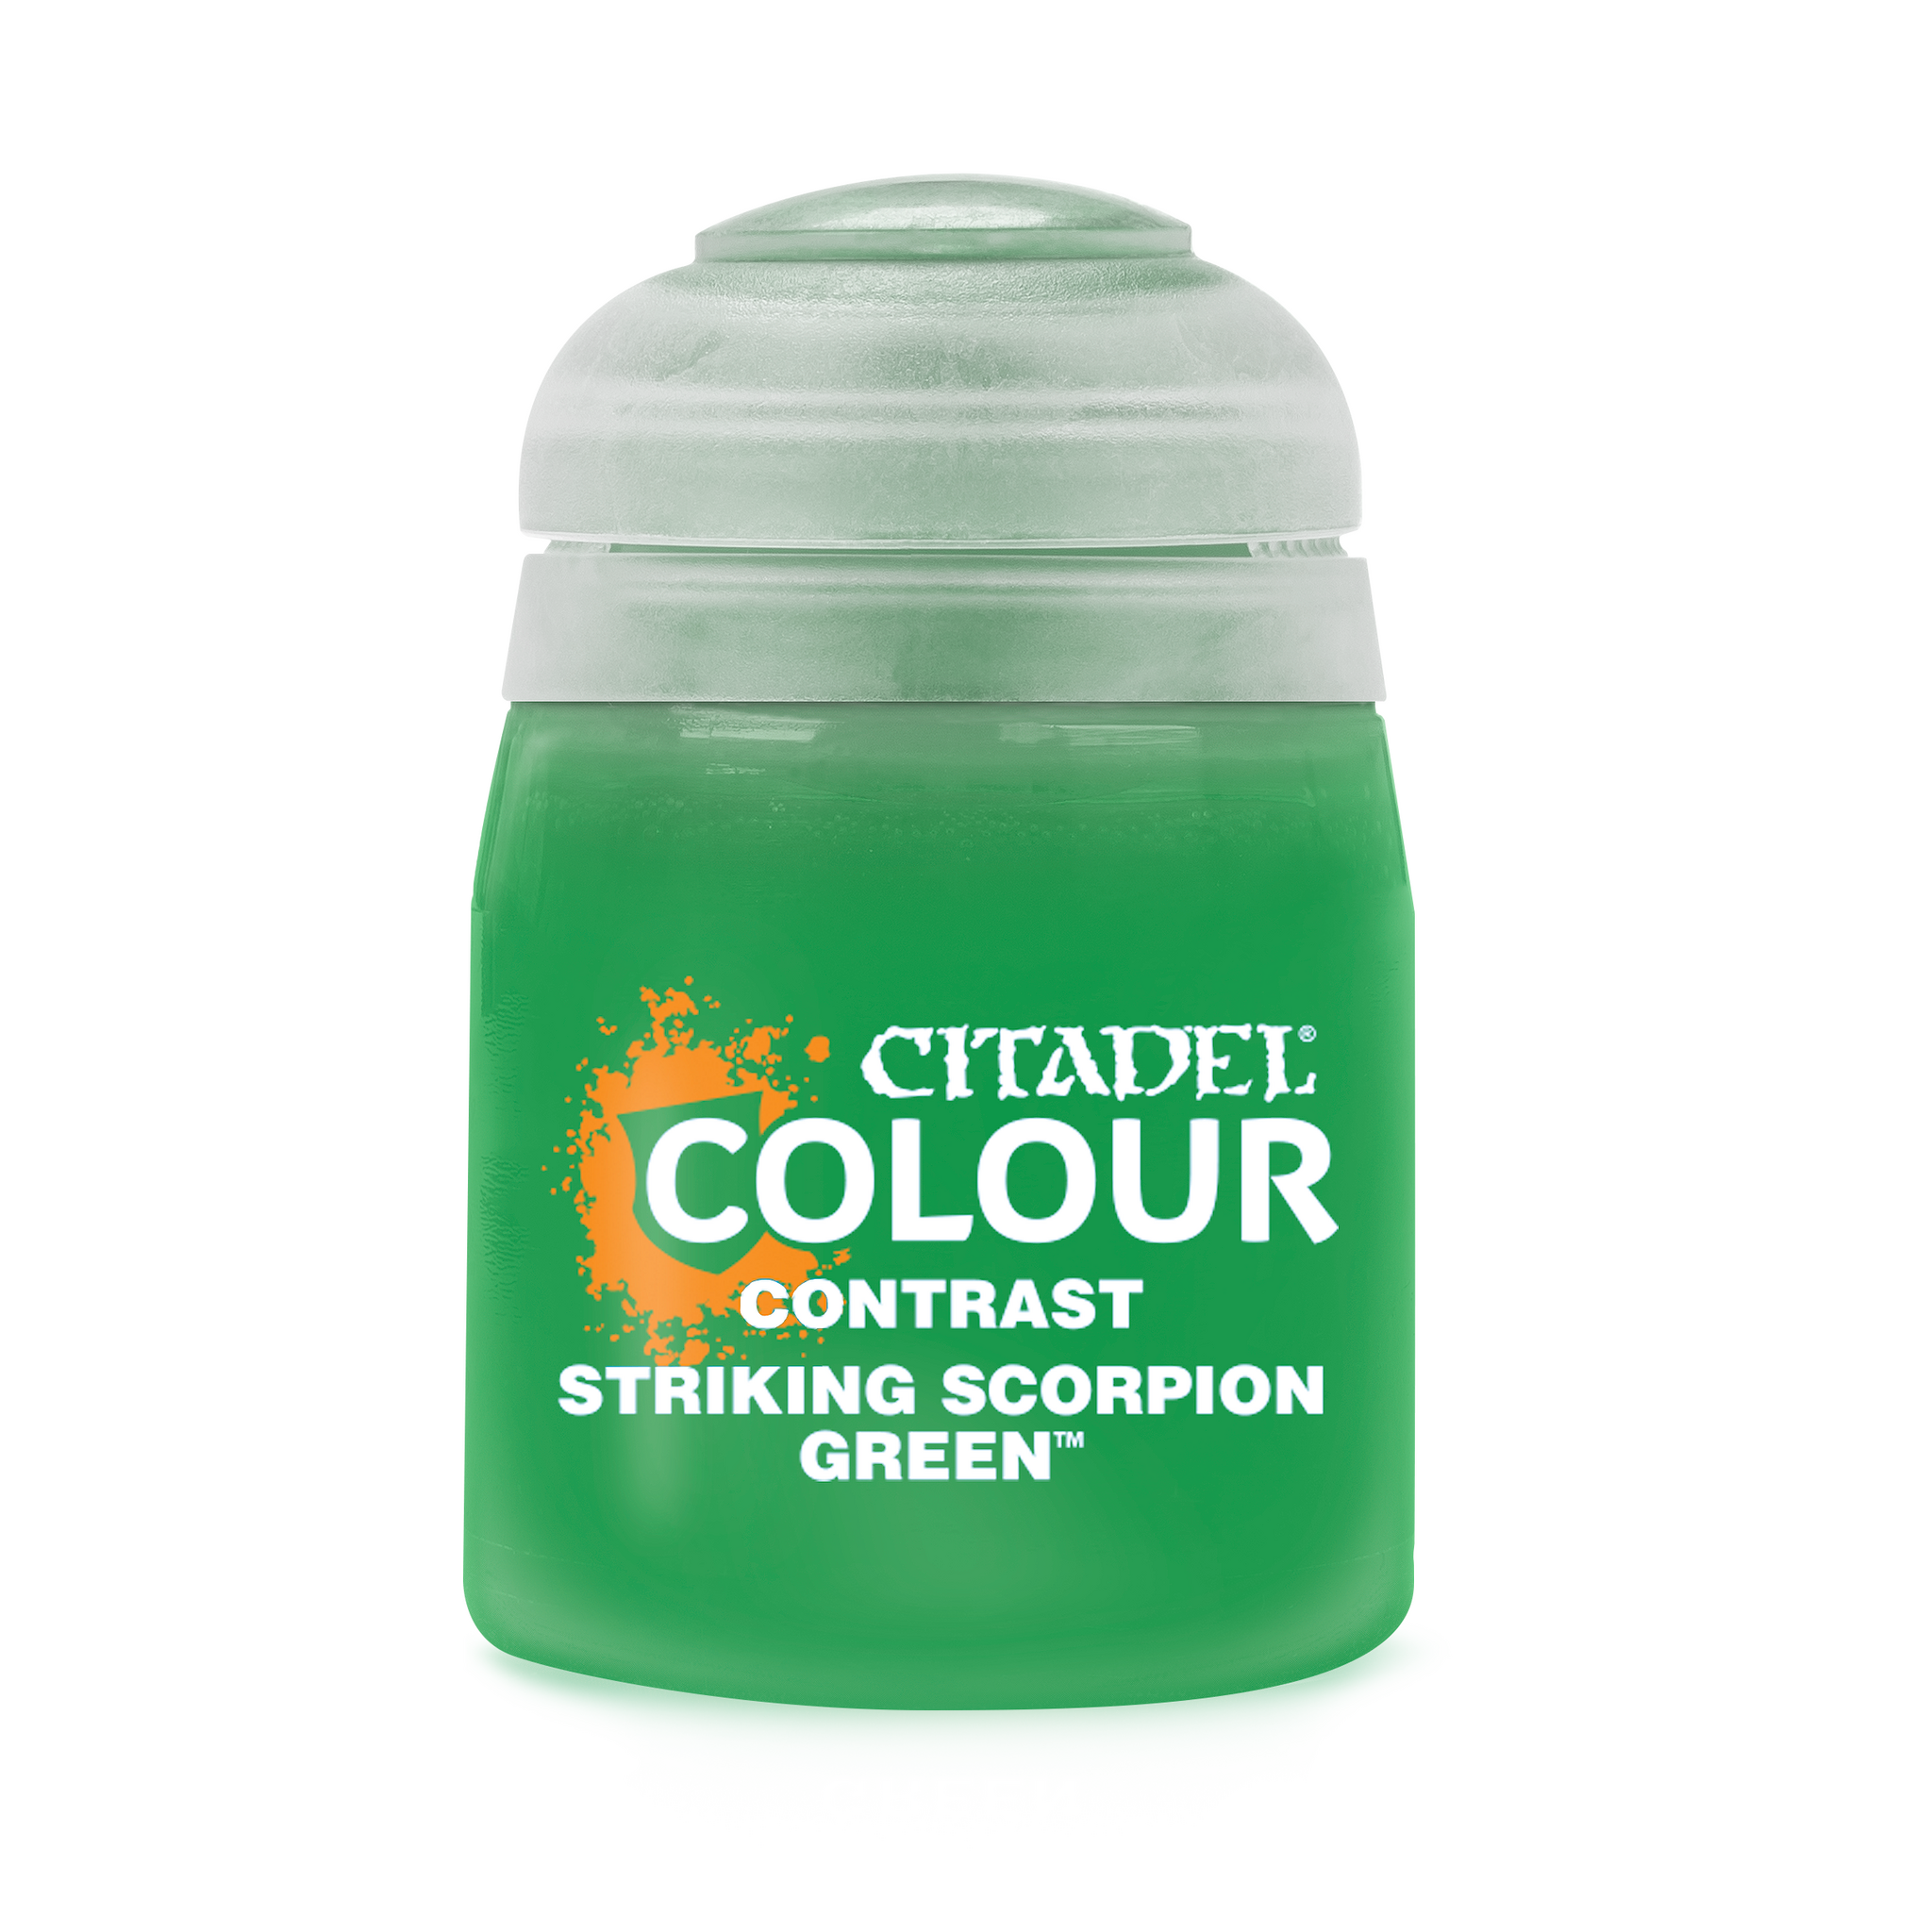 Striking Scorpion Green